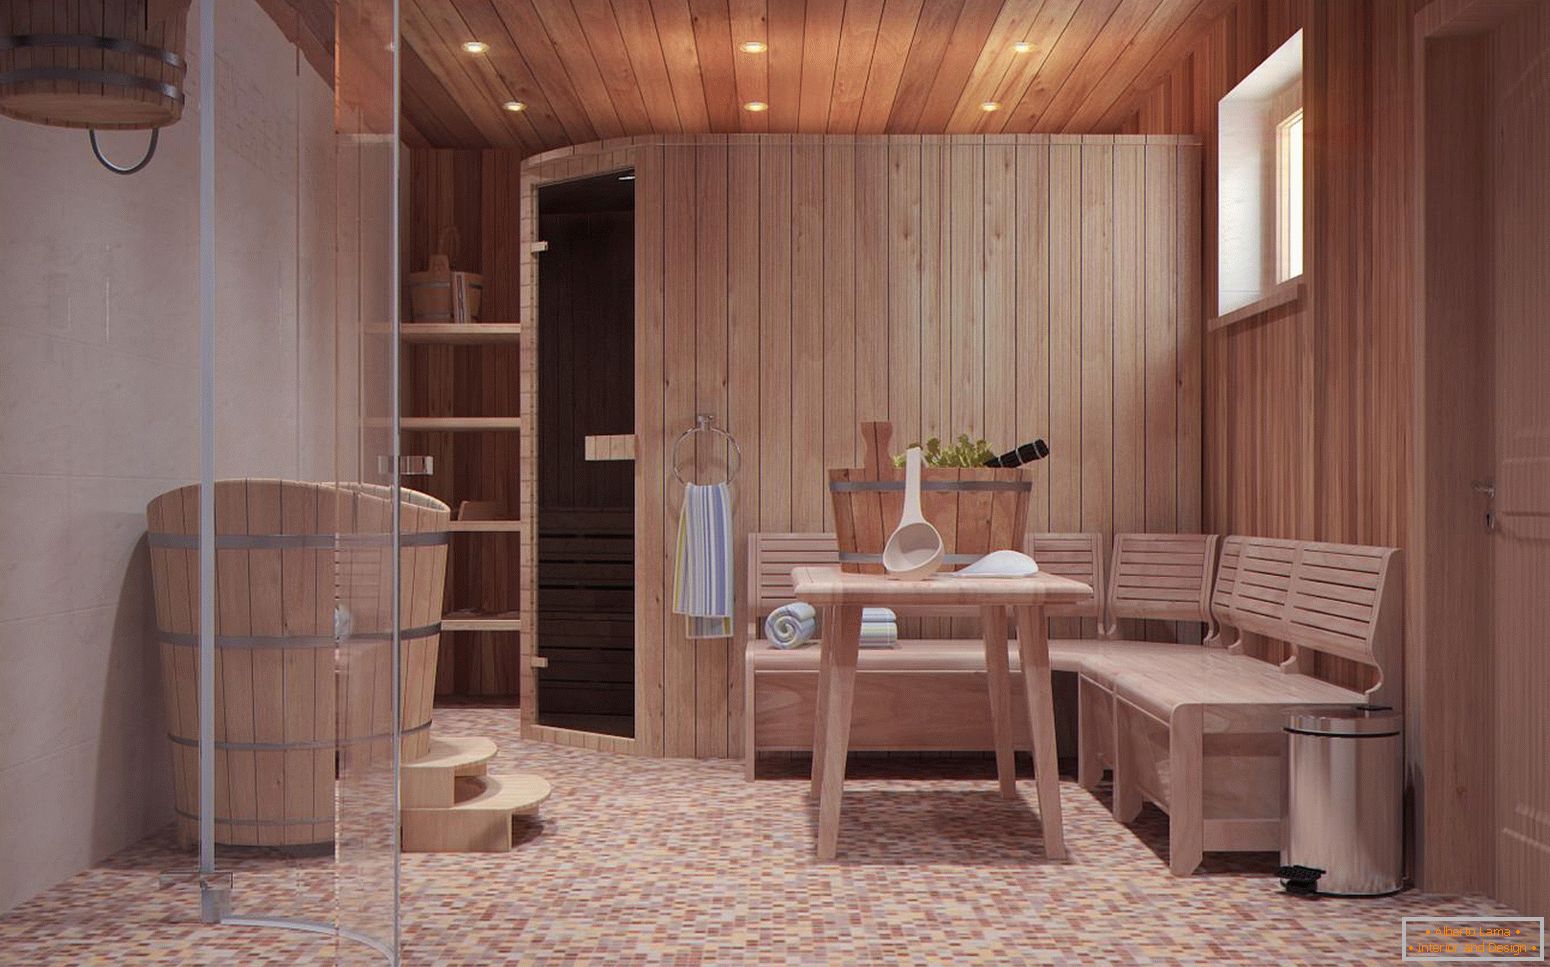 Una sala relax in uno stabilimento balneare in stile scandinavo